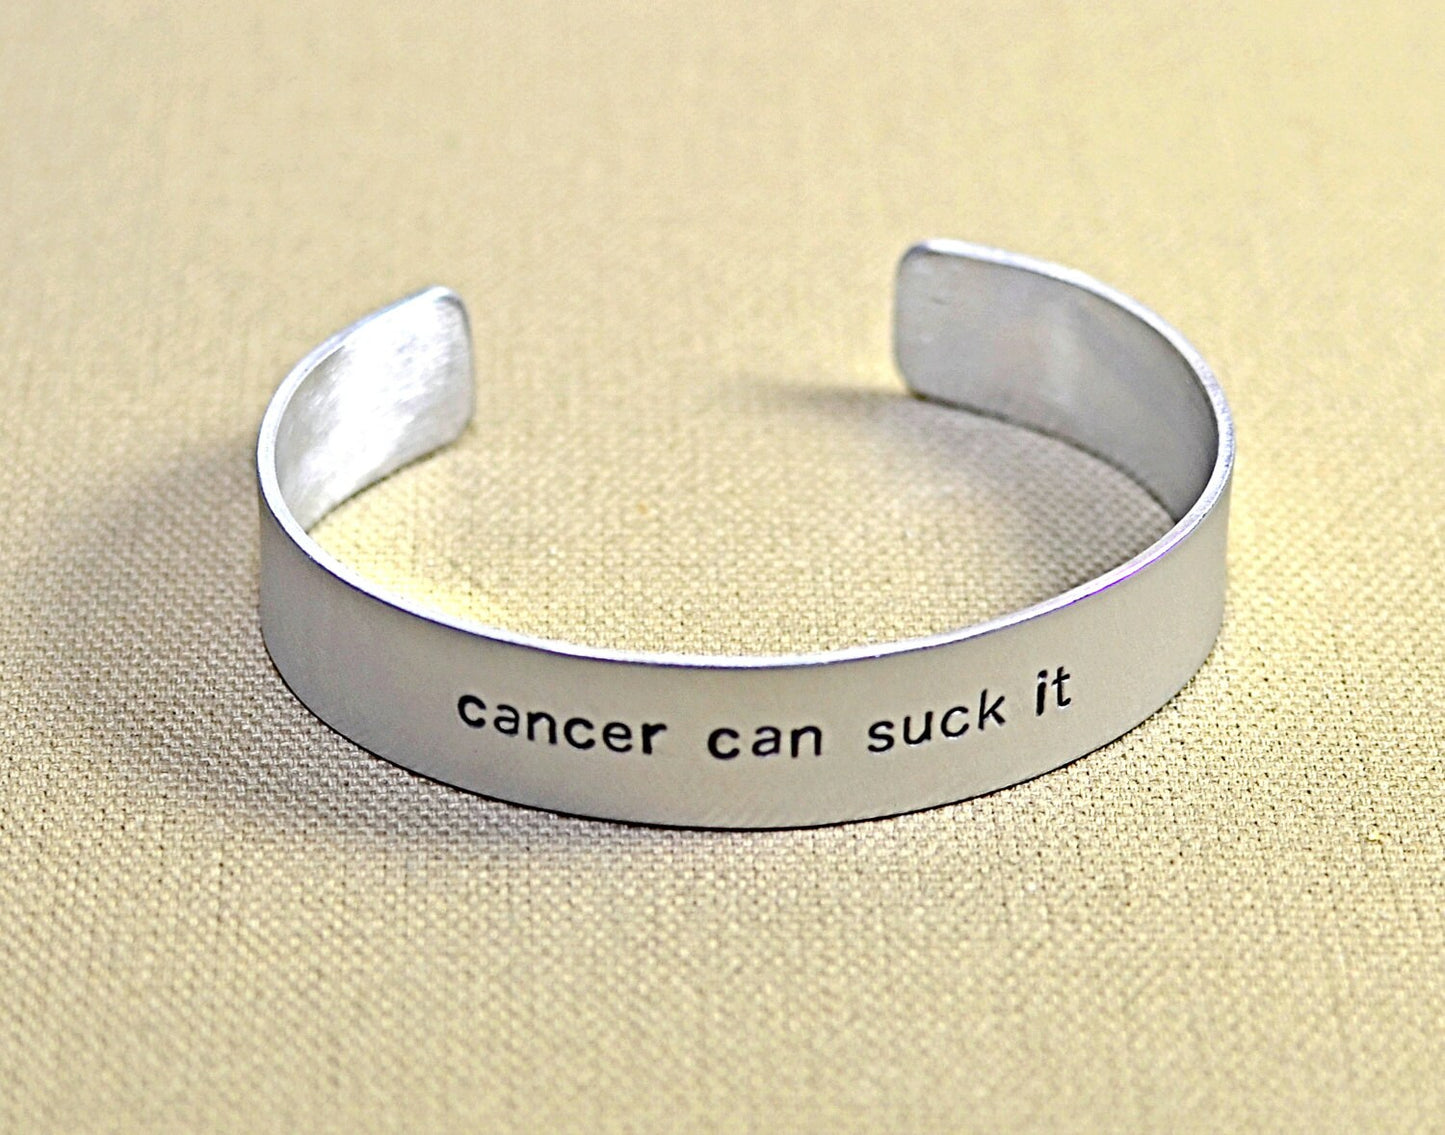 Cancer can suck it aluminum cuff bracelet